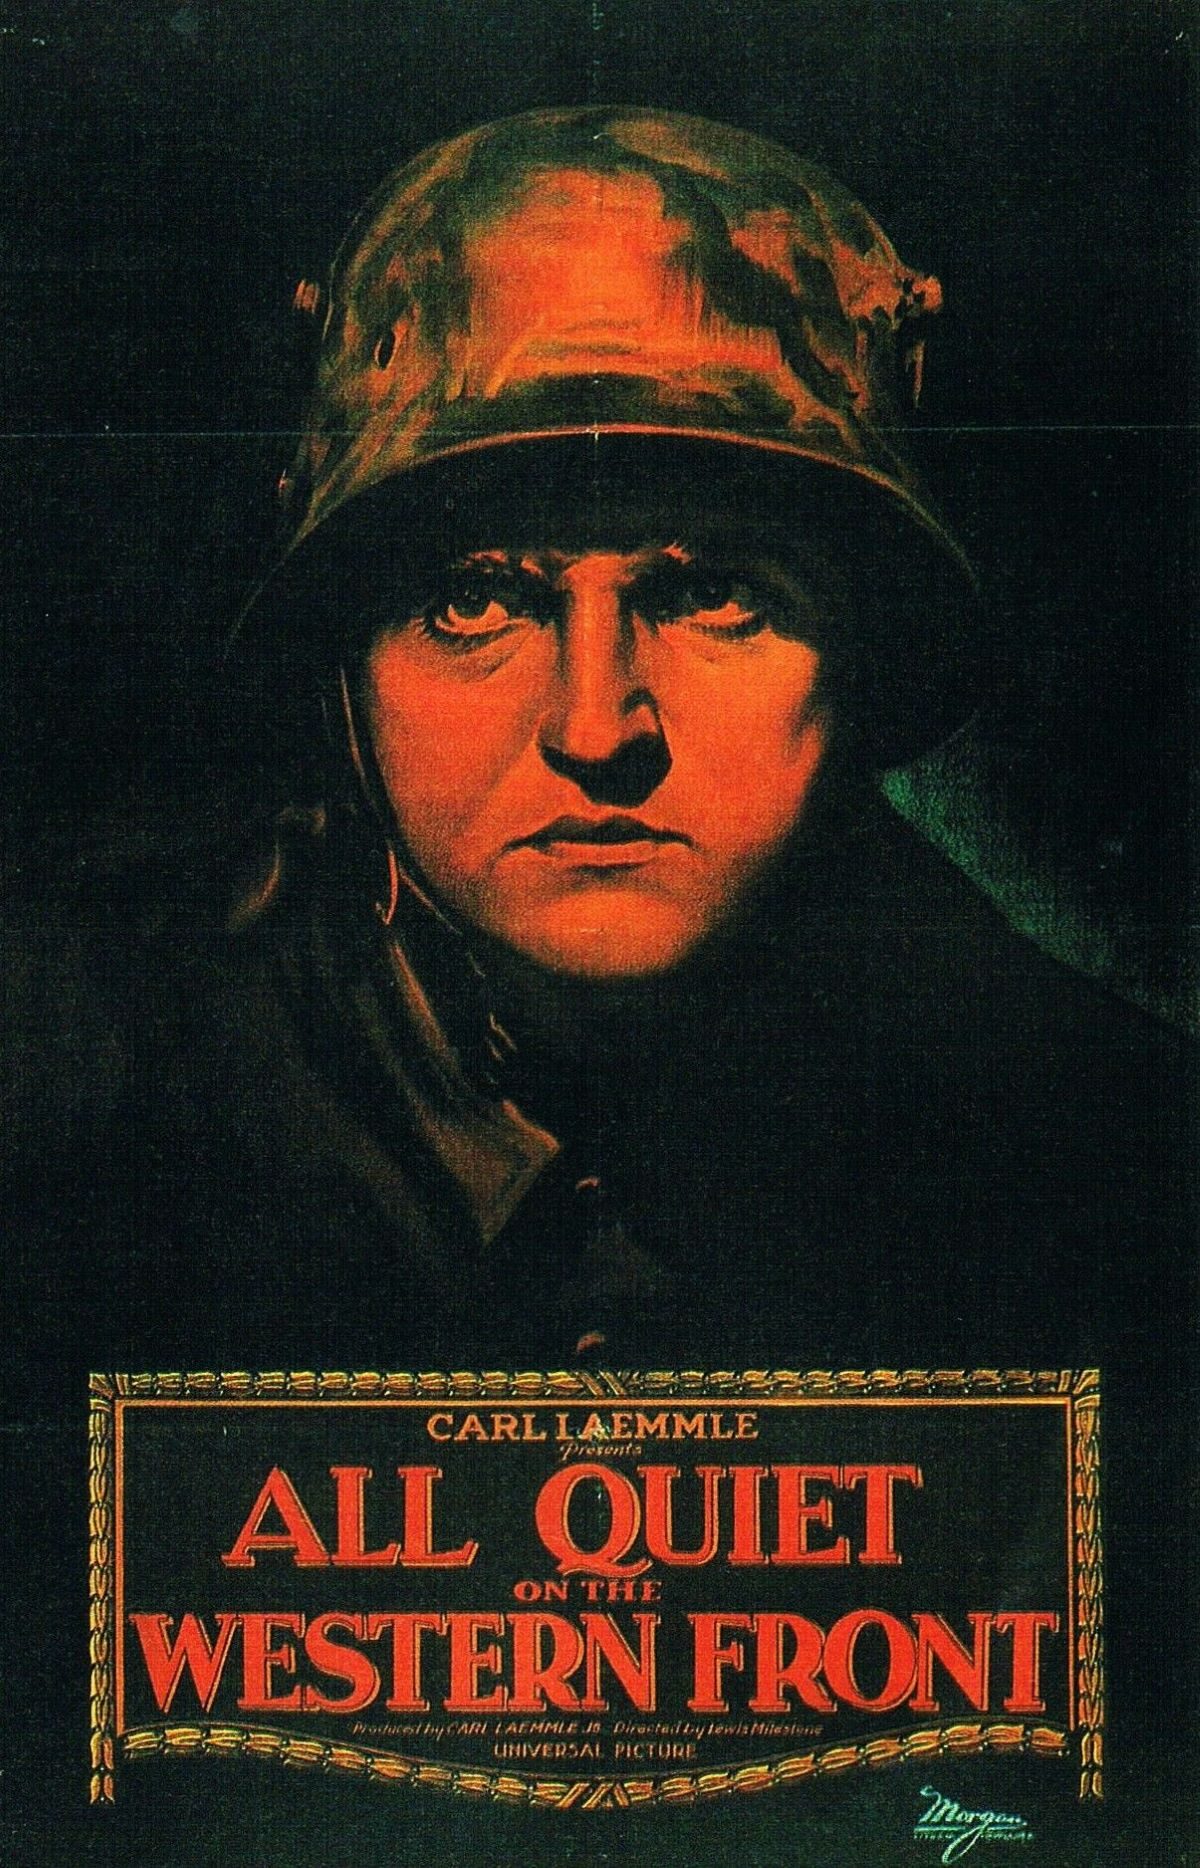 Karoly Grosz, movie posters, Lew Ayres, film, war movies, movie posters, design, art, 1930